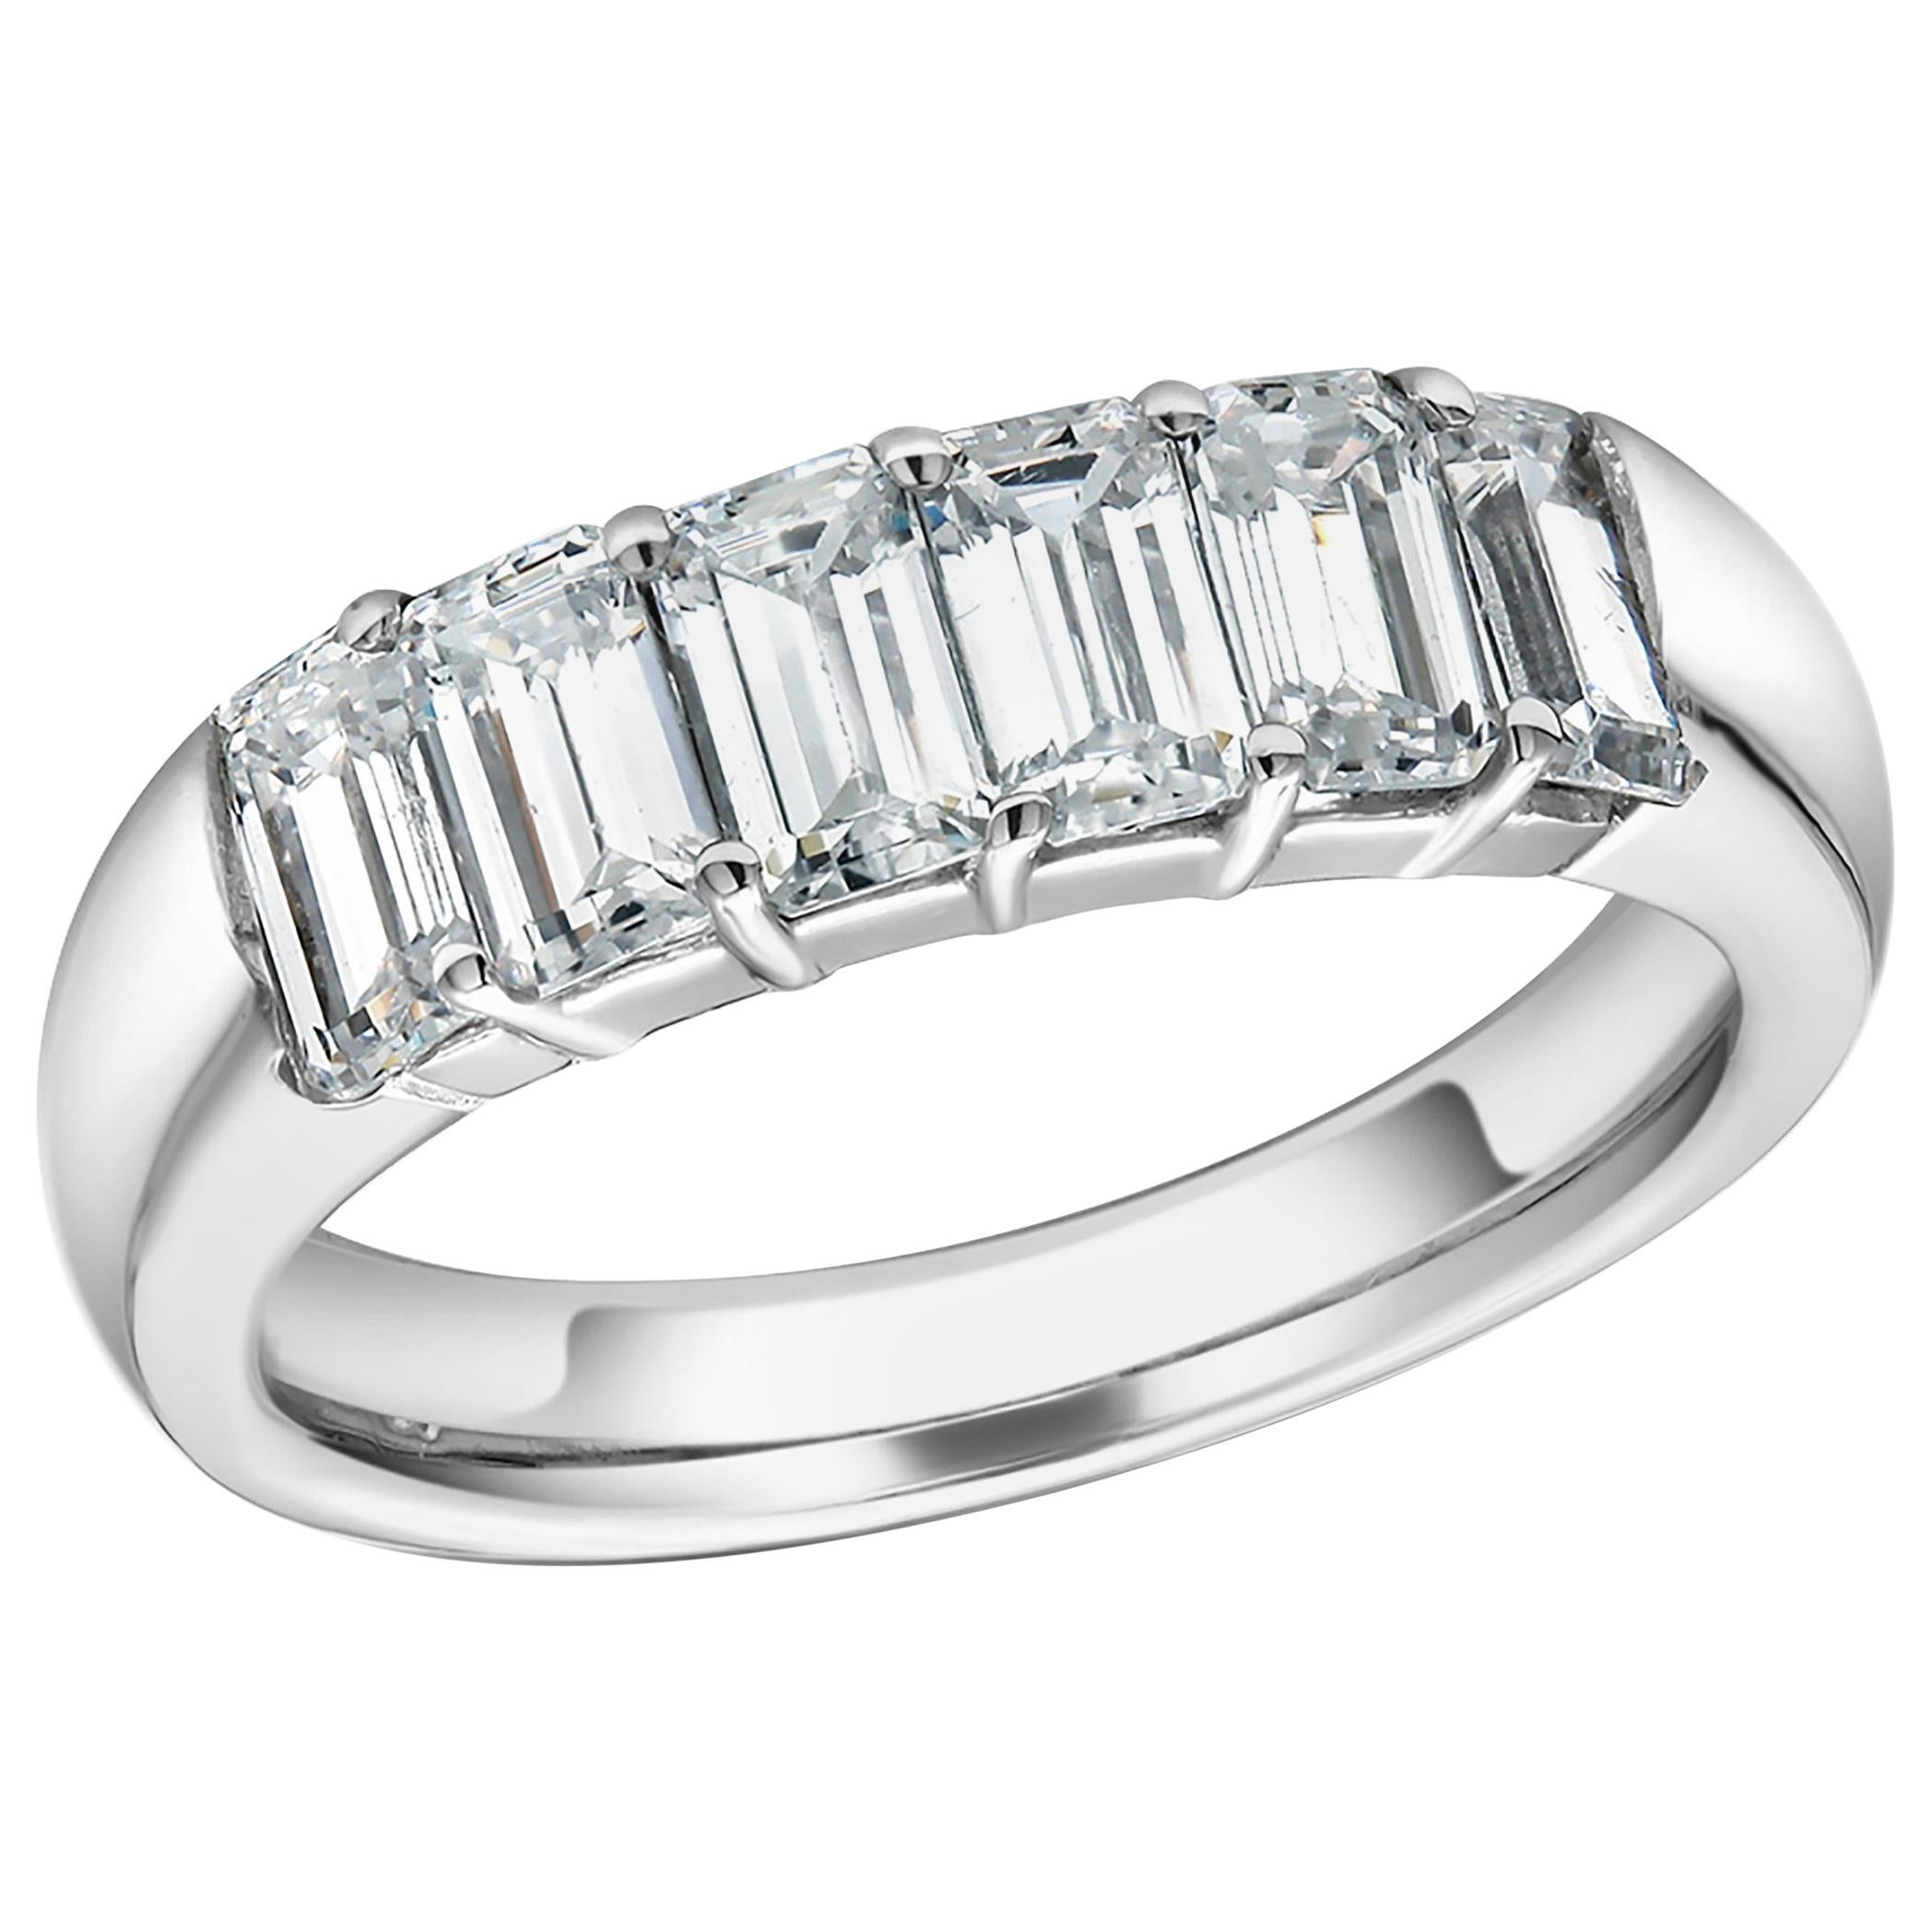 Baguette Diamond Partial Prong Set 18 Karat Gold Ring Weighing 1.50 Carat